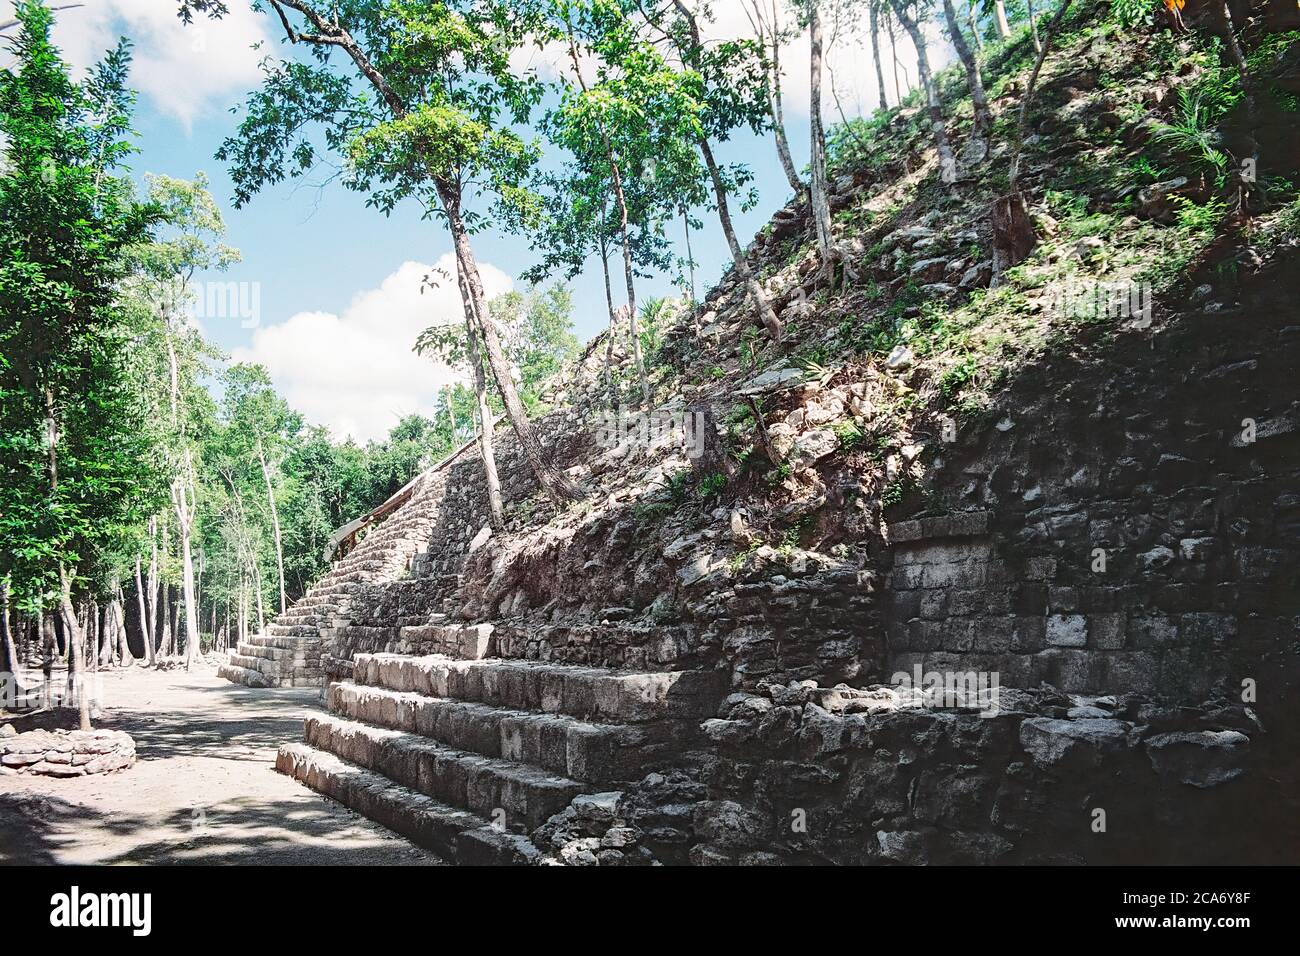 Struktur I. zeigt die Bäume, die aus der Pyramide wachsen. Balamku Maya Ruinen. Campeche, Mexiko. Vintage Film Bild - ca. 1990. Stockfoto